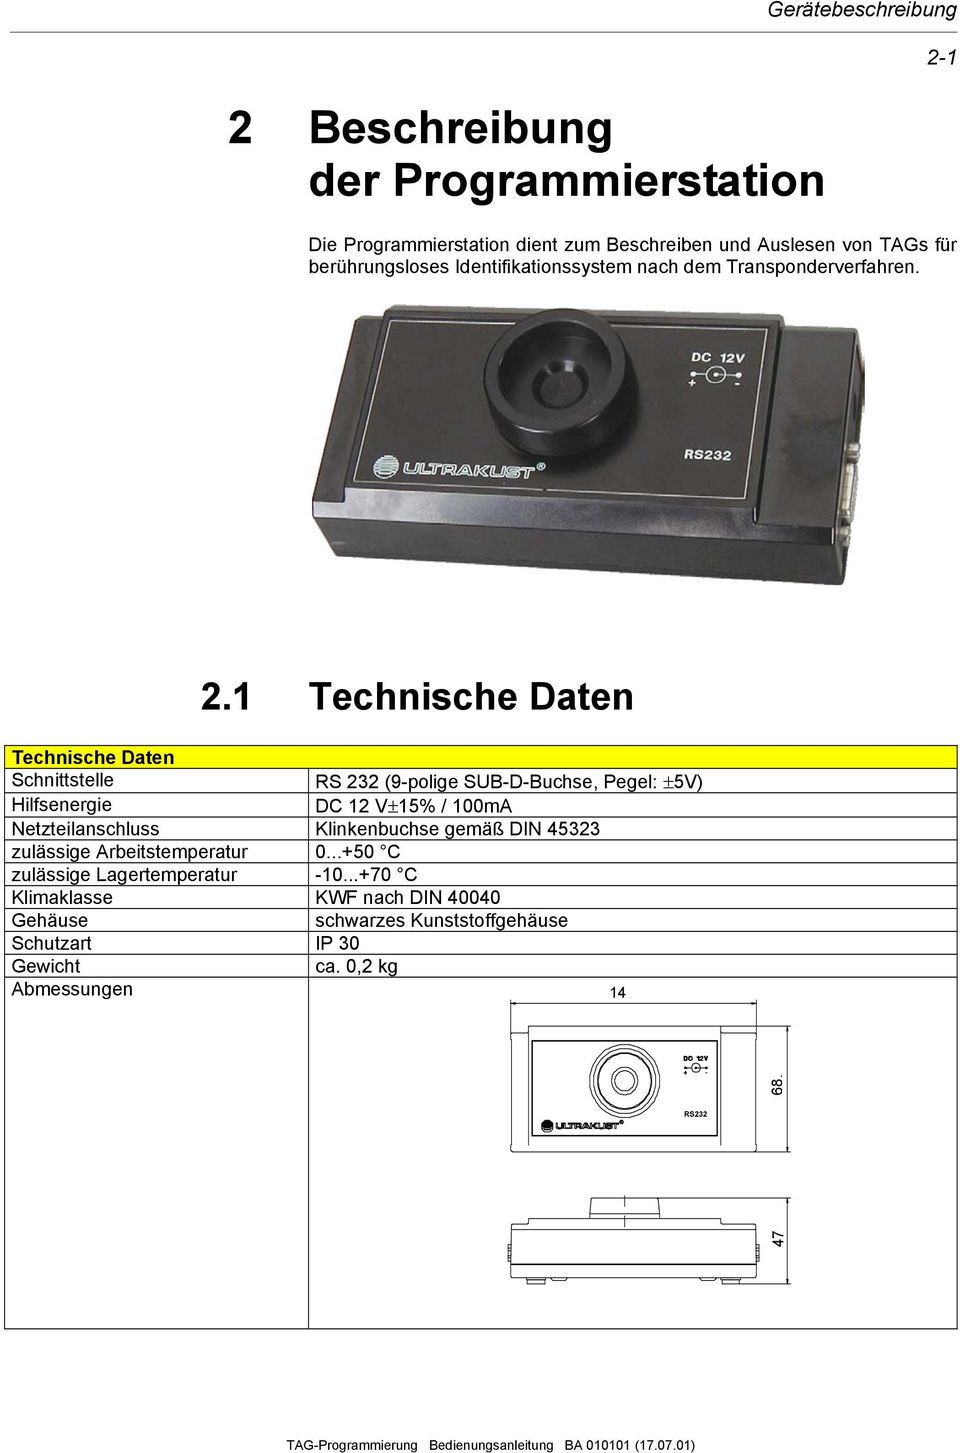 1 Technische Daten Technische Daten Schnittstelle RS 232 (9-polige SUB-D-Buchse, Pegel: ±5V) Hilfsenergie DC 12 V±15% / 100mA Netzteilanschluss